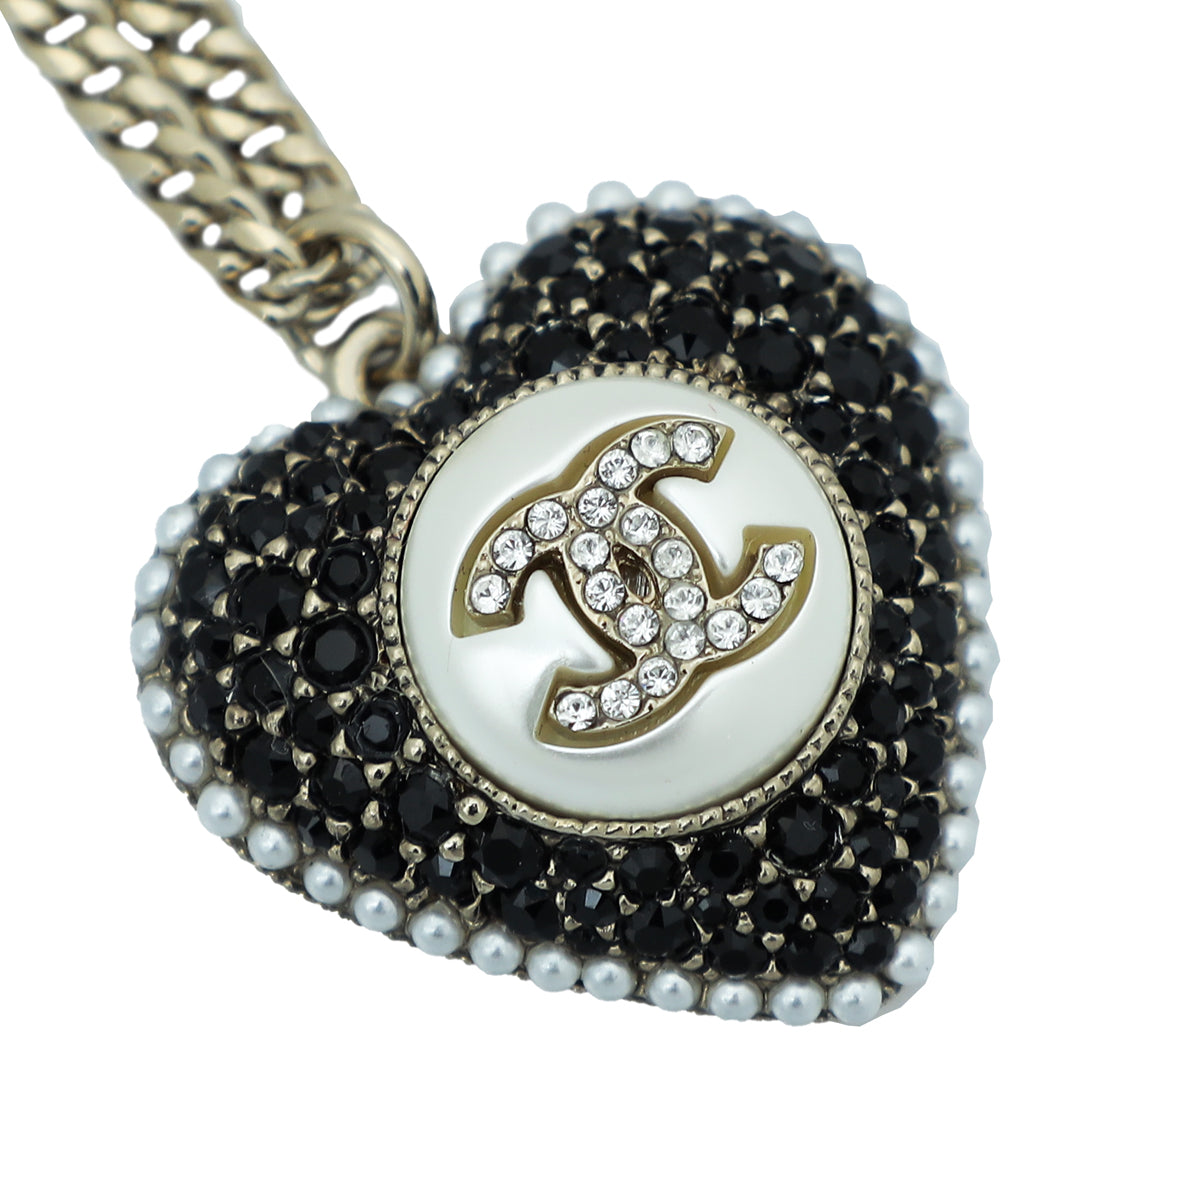 Chanel Bicolor CC Heart Necklace